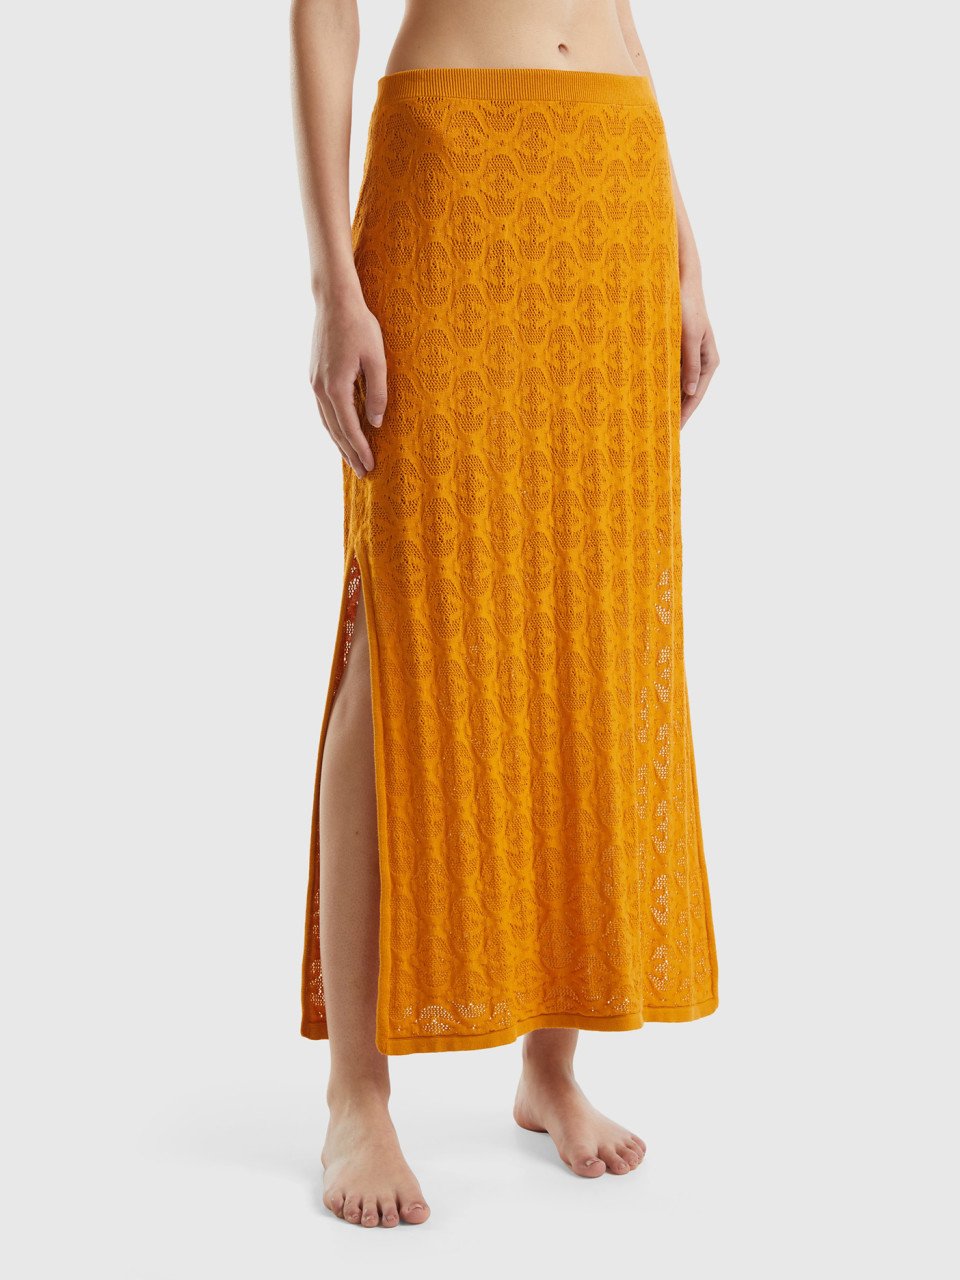 Benetton, Monogram Knit Midi Skirt, Mustard, Women